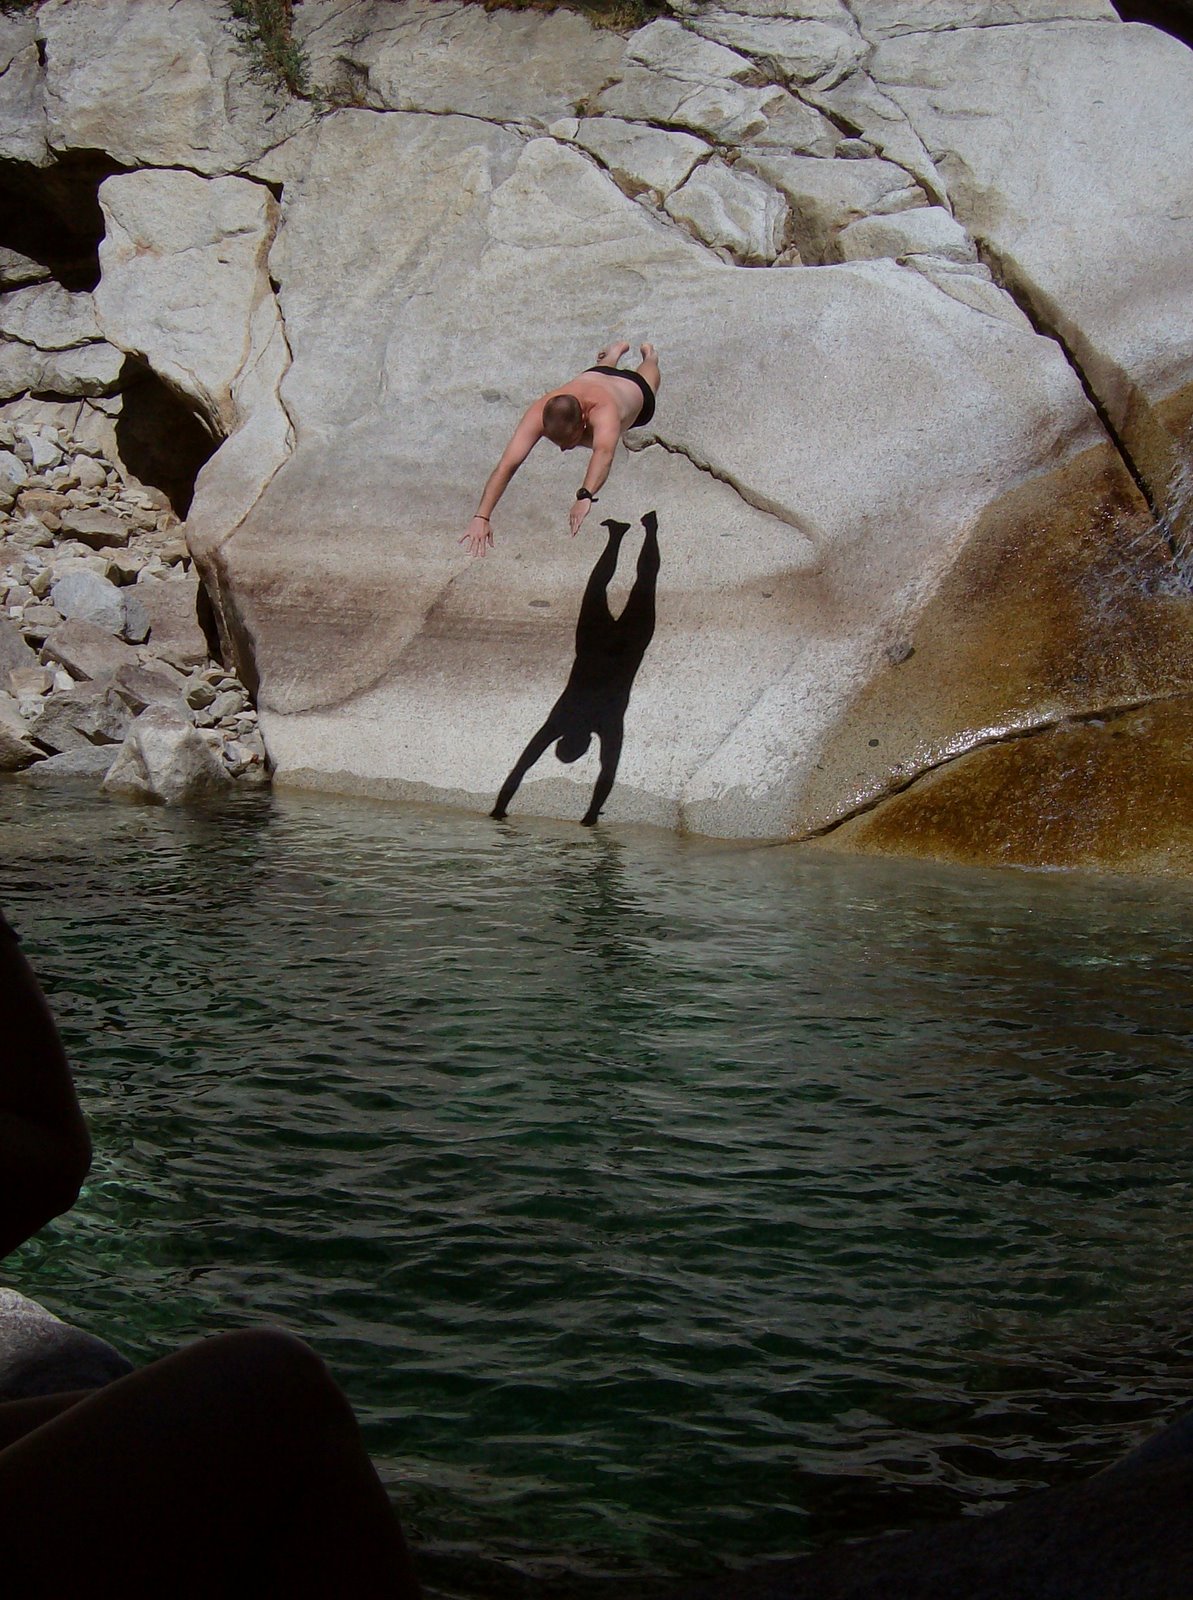 [Backpacker+diving+into+last+pool+in+Tenaya+Canyon.JPG]